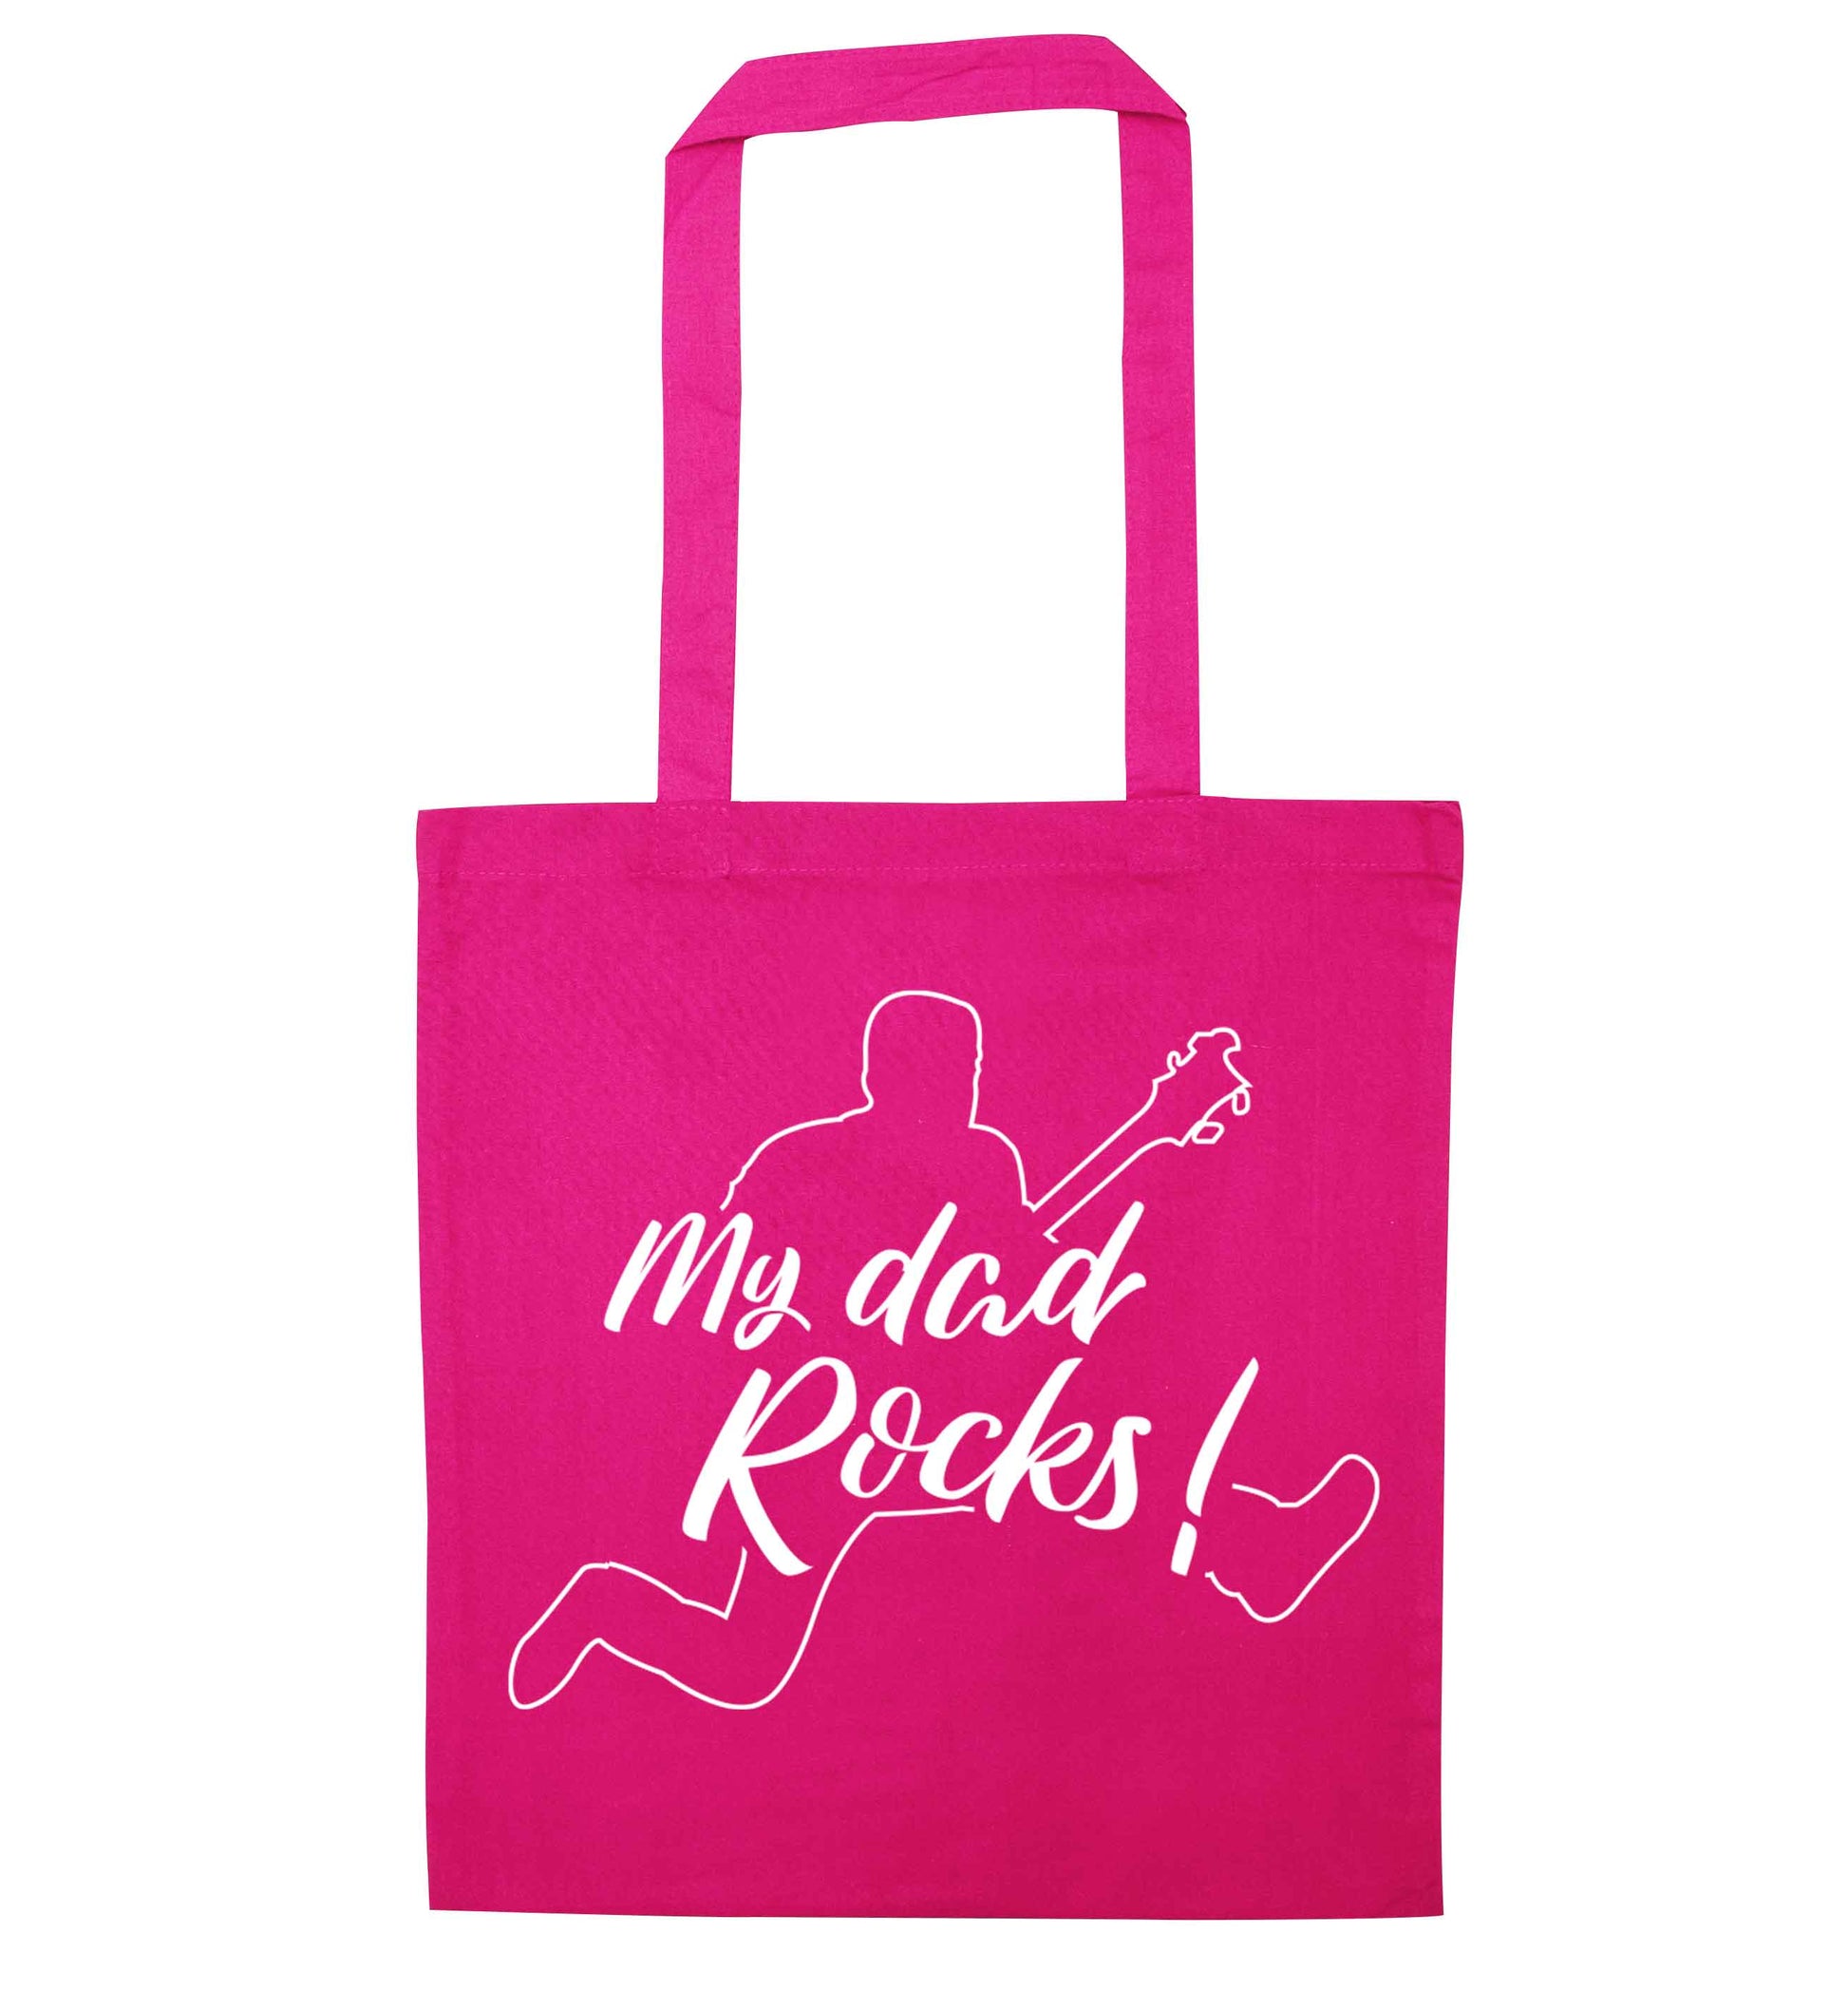 My Dad rocks pink tote bag